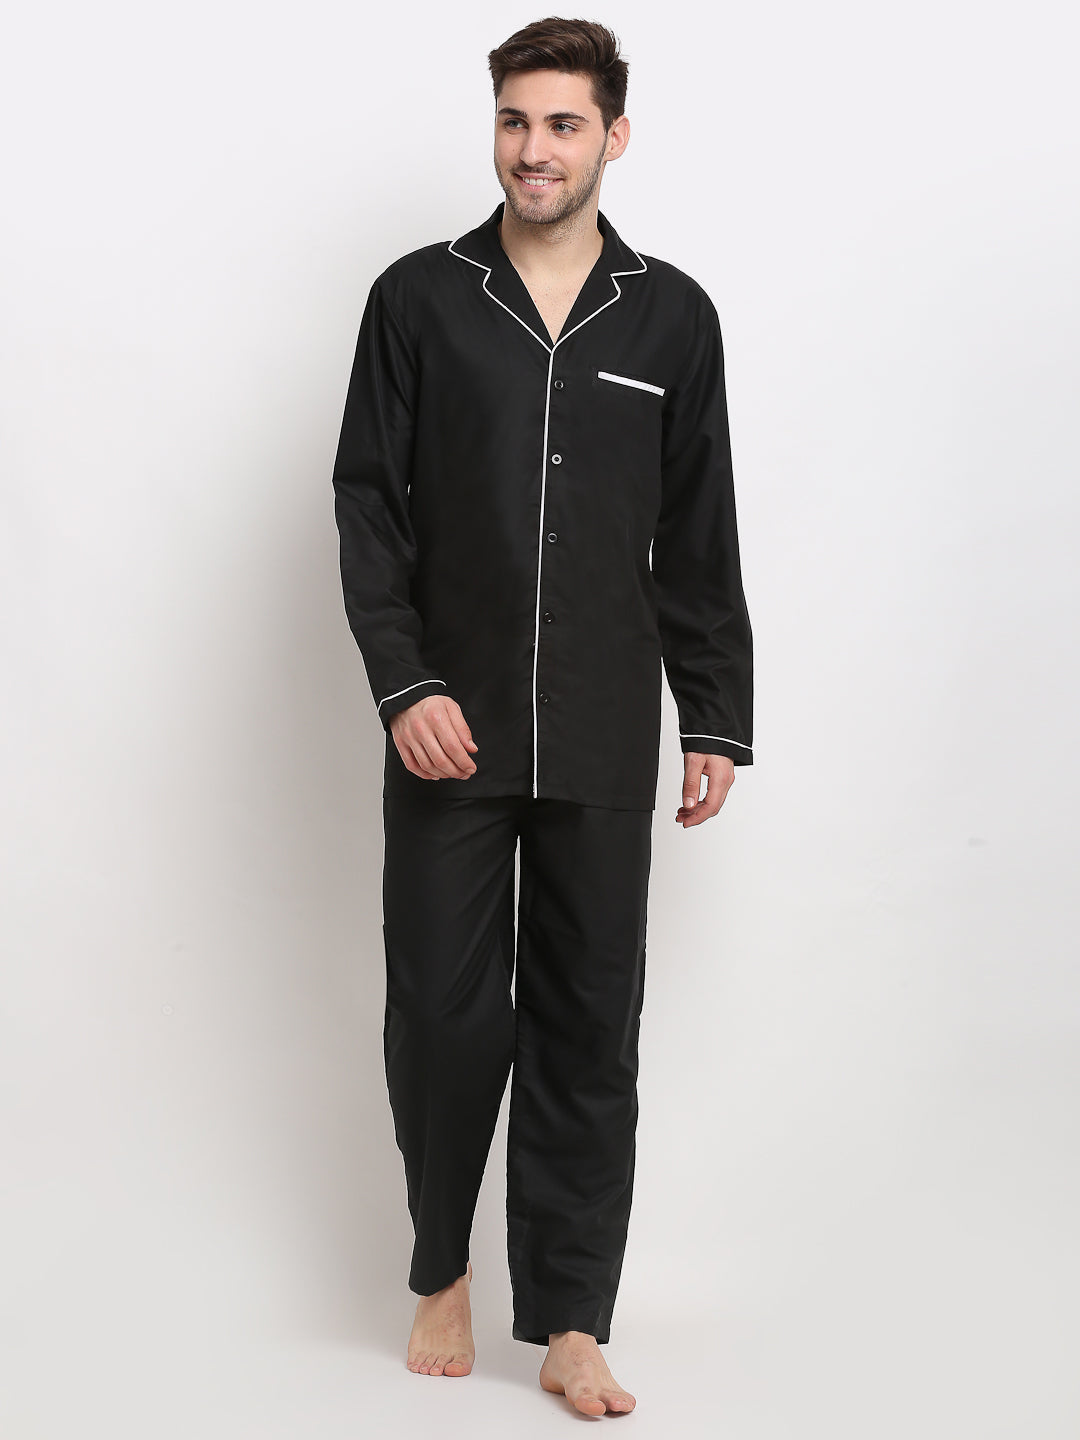 Men's Black Cotton Solid Night Suits ( GNS 003Black ) - Jainish